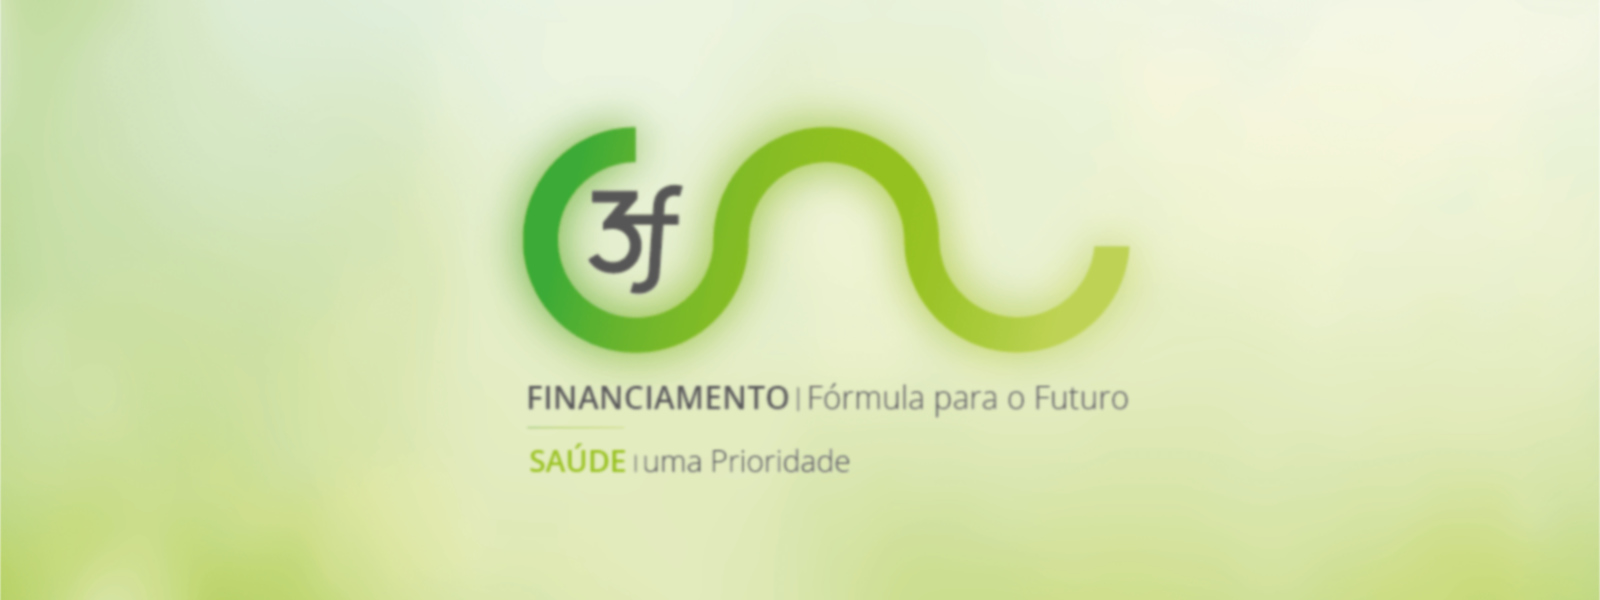 financiamento fórmula para o futuro para os hospitais